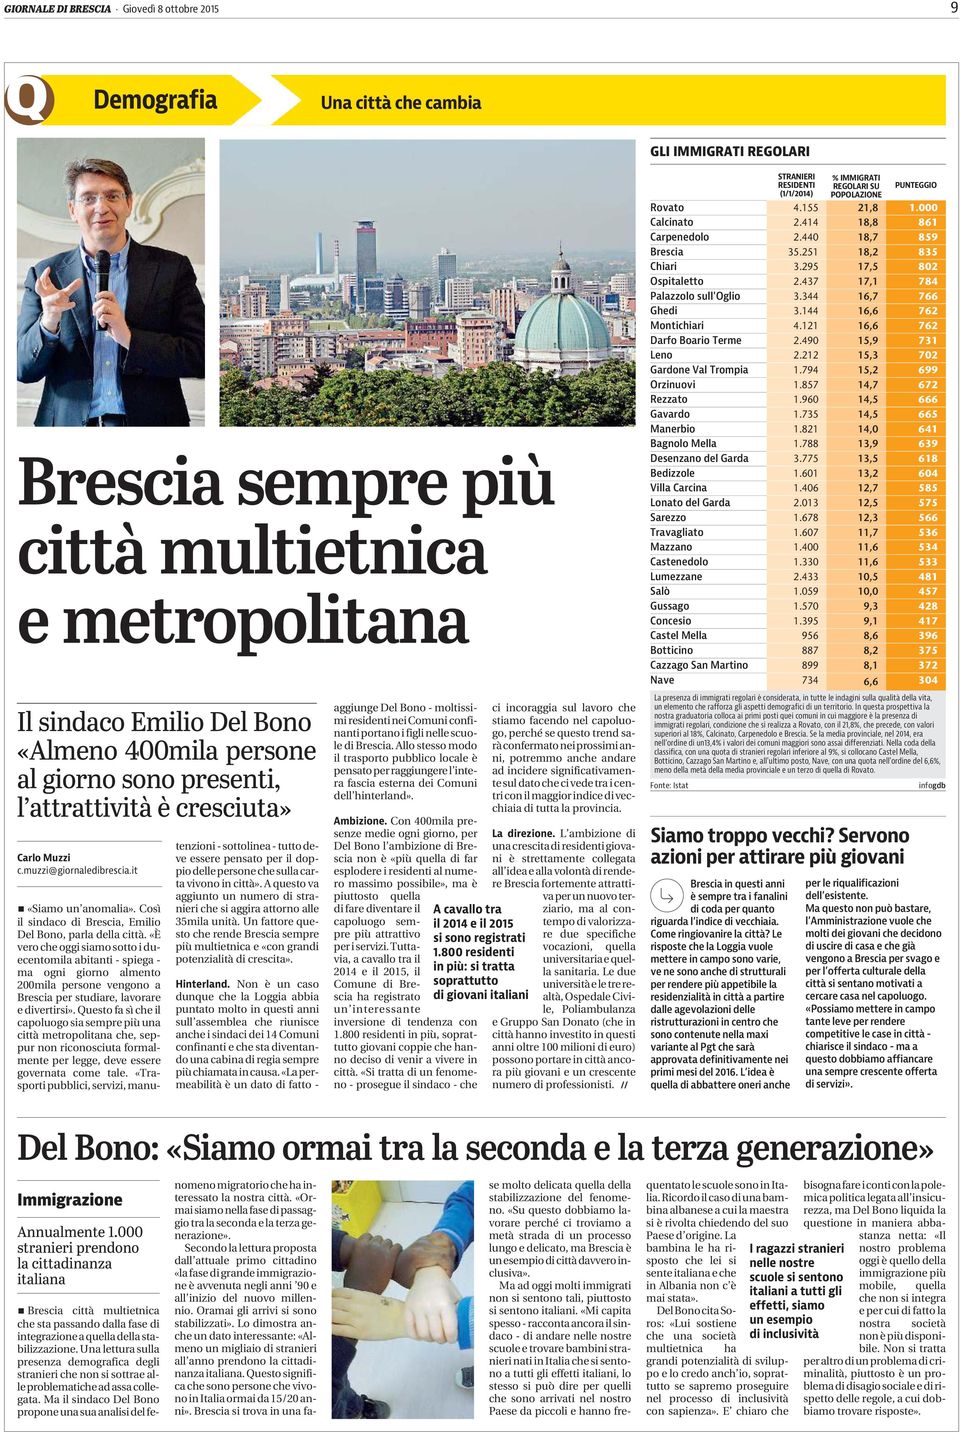 «È vero che oggi siamo sotto i duecentomila abitanti - spiega - ma ogni giorno almento 200mila persone vengono a Brescia per studiare, lavorare e divertirsi».